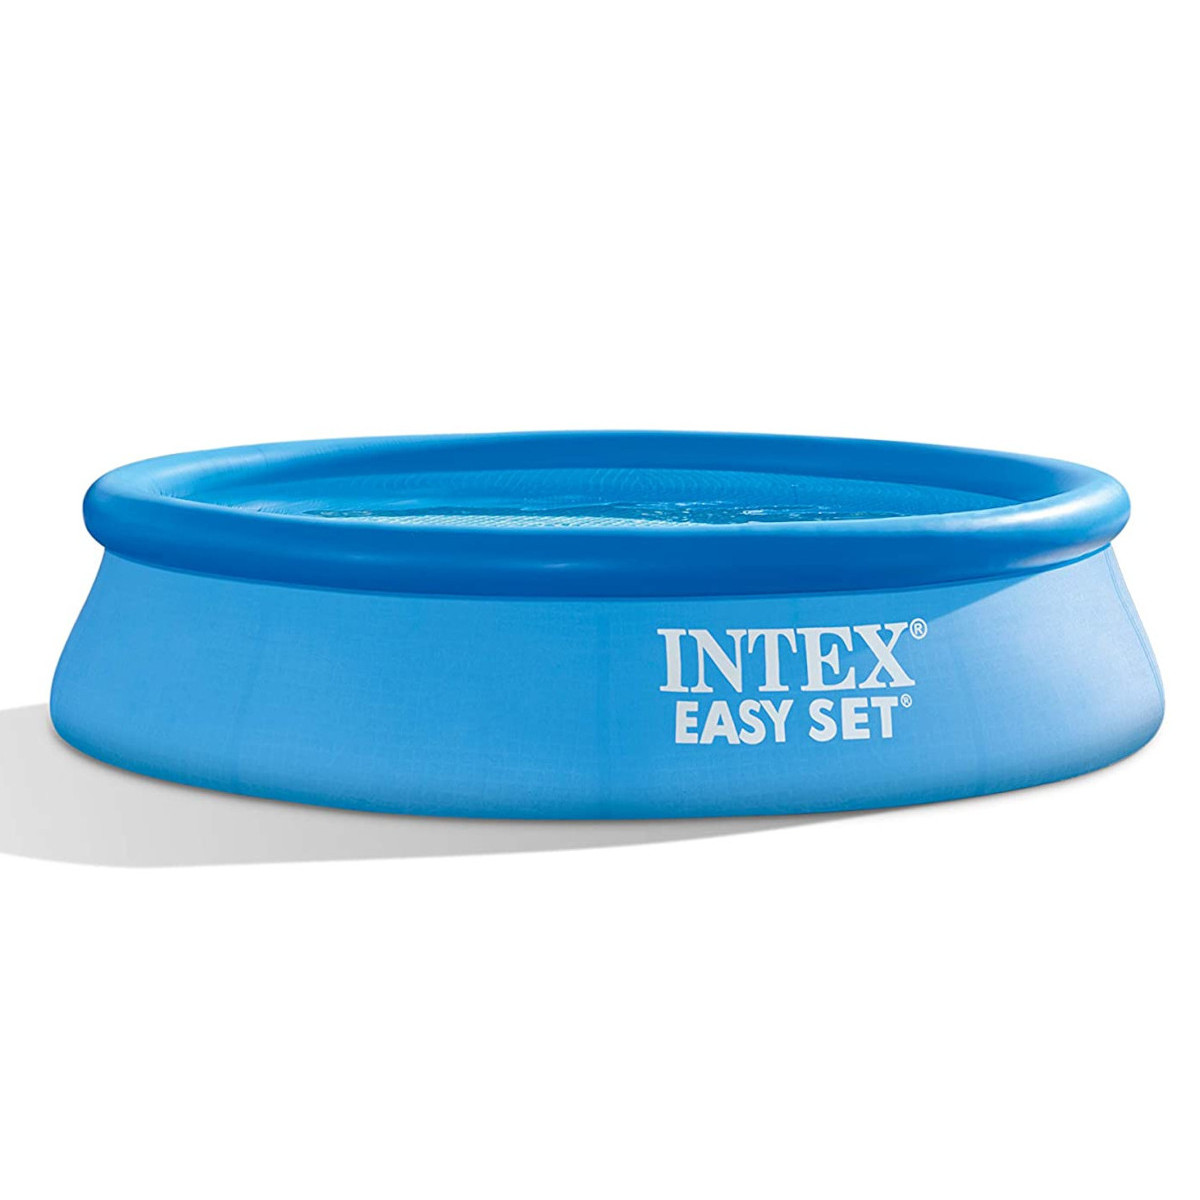 INTEX EasySet 28106NP Swimmingpool, blau